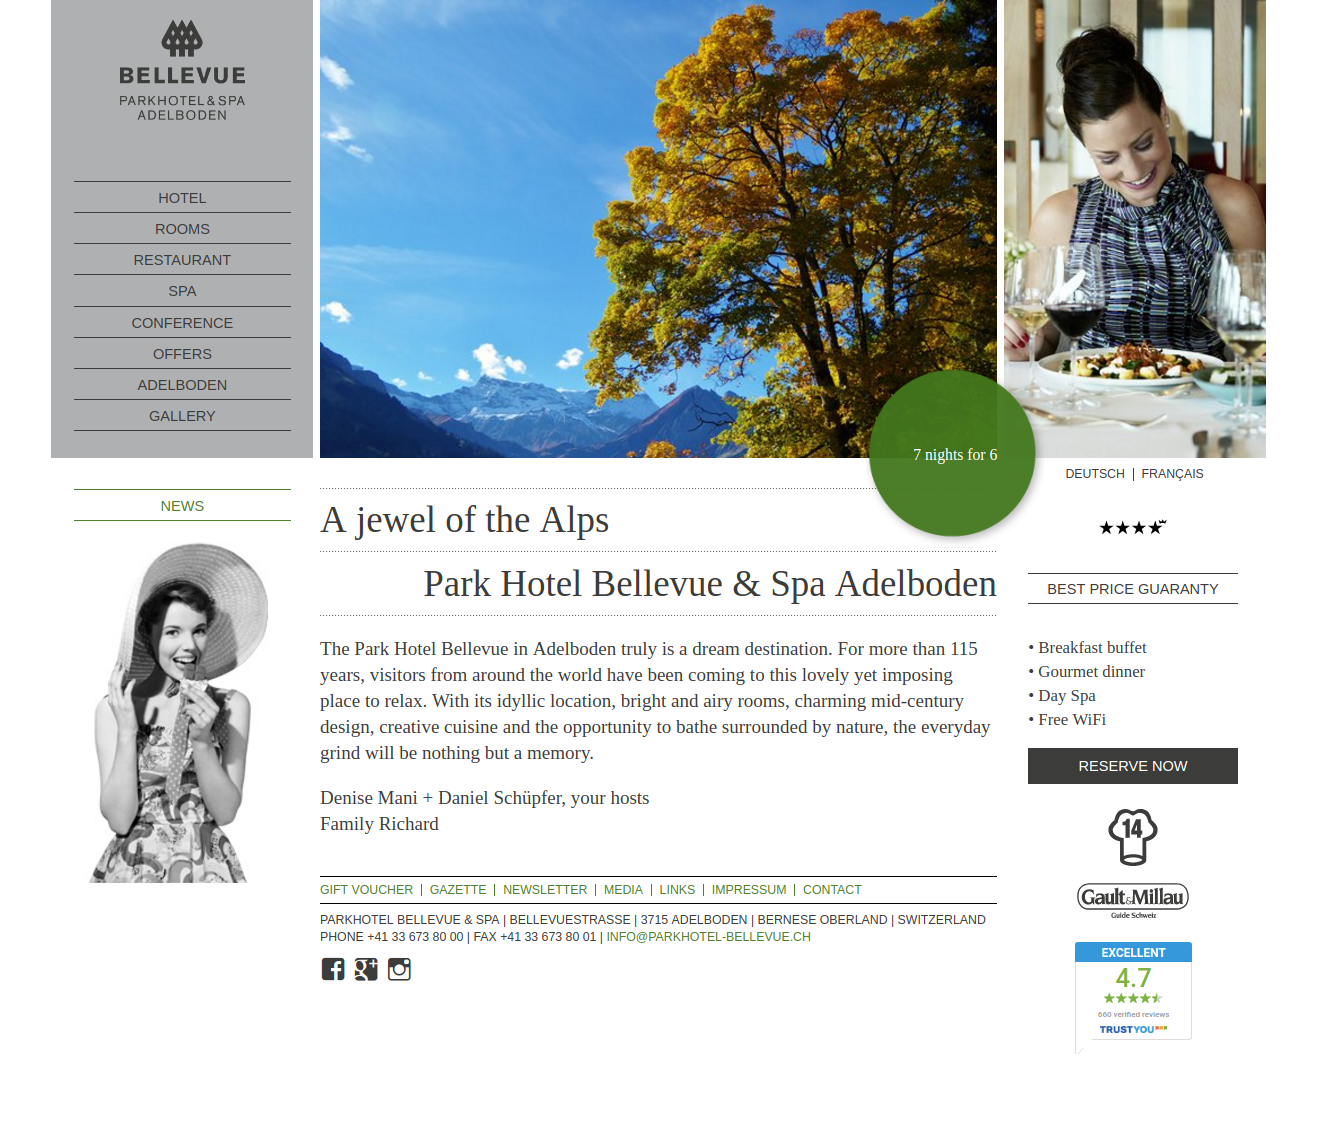 Homepage / Parkhotel Bellevue Adelboden